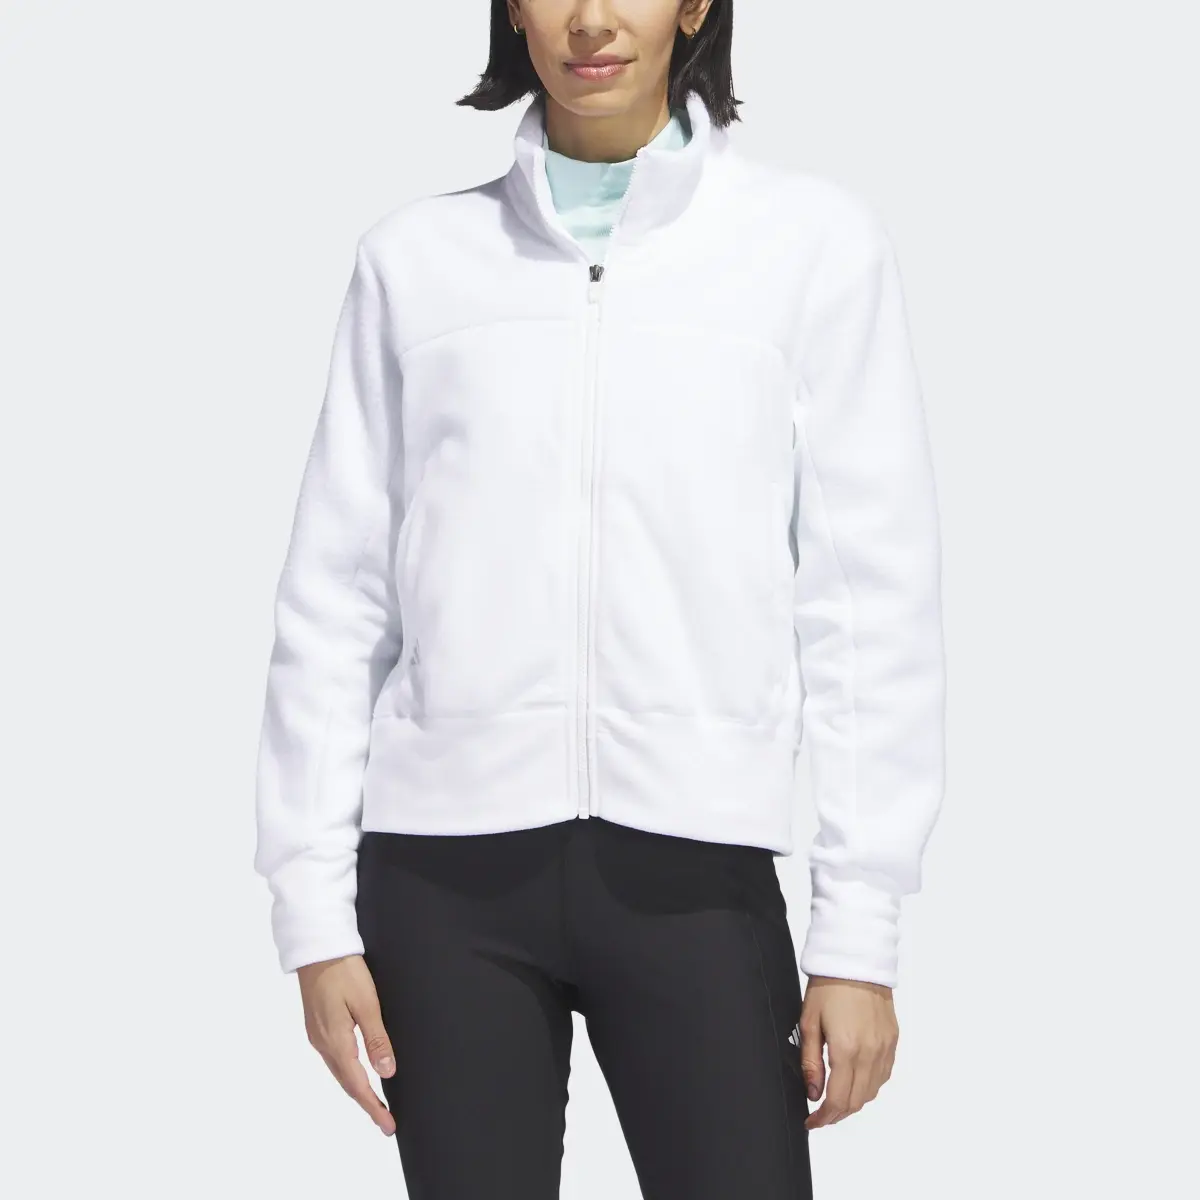 Adidas Full-Zip Fleece Jacket. 1